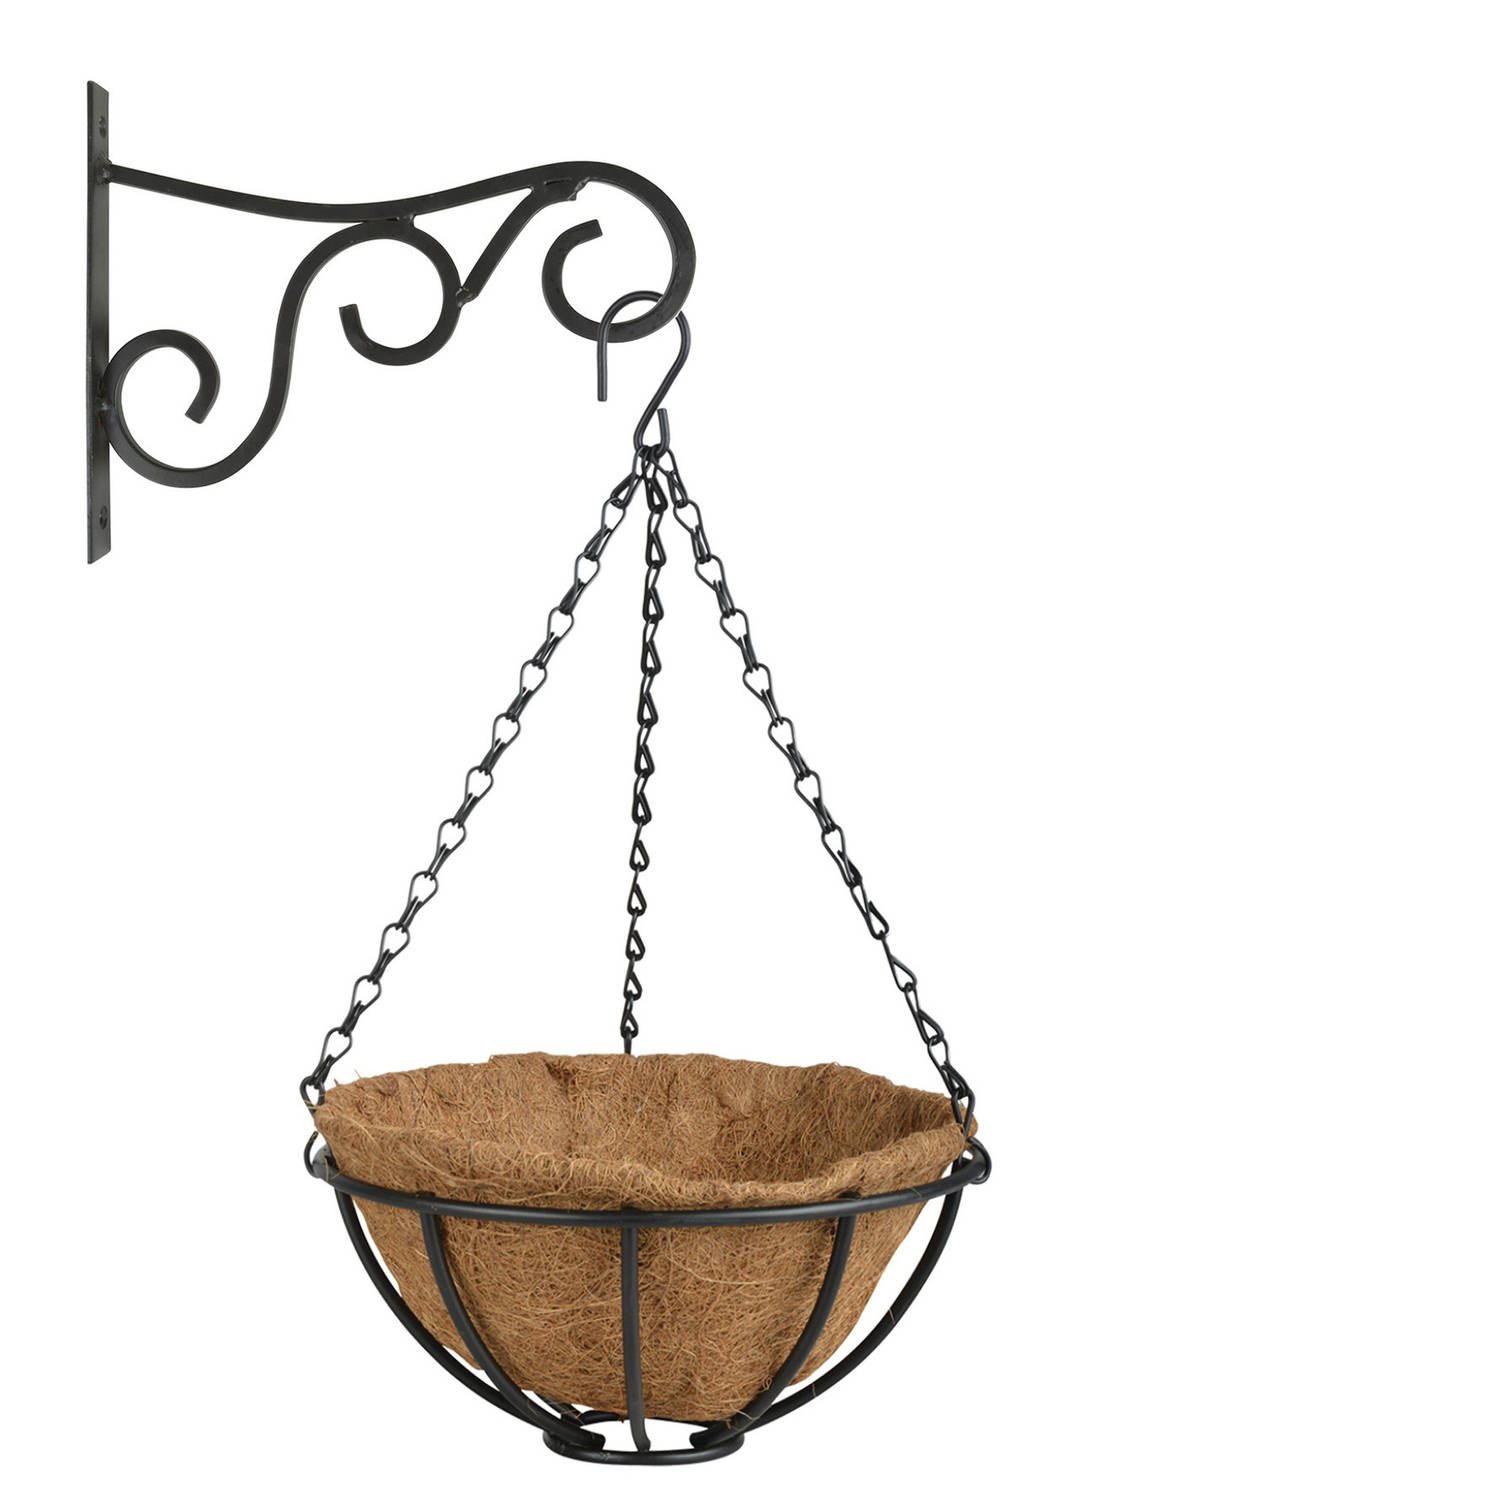 Hanging Basket 25 Cm Met Metalen Muurhaak En Kokos Inlegvel Plantenbakken